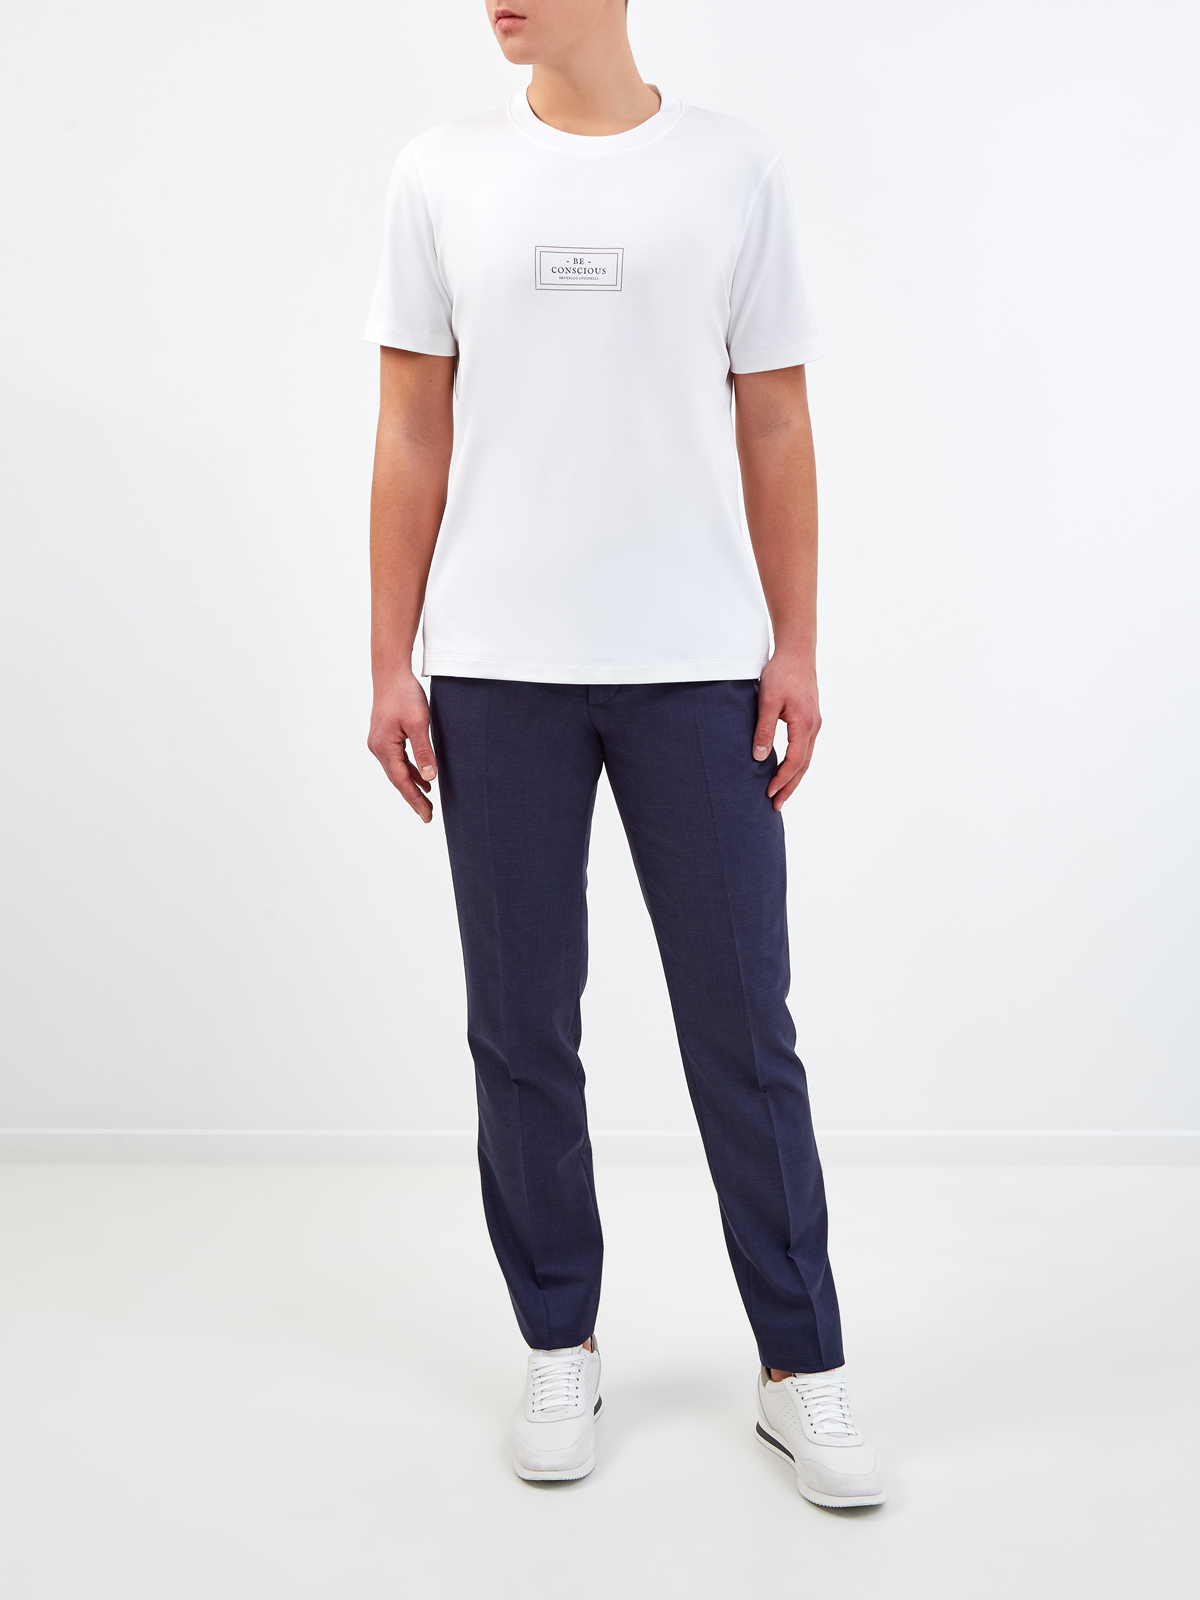 Белая футболка из джерси с минималистичным принтом BRUNELLO CUCINELLI, цвет белый, размер 46;52;56;50 - фото 2